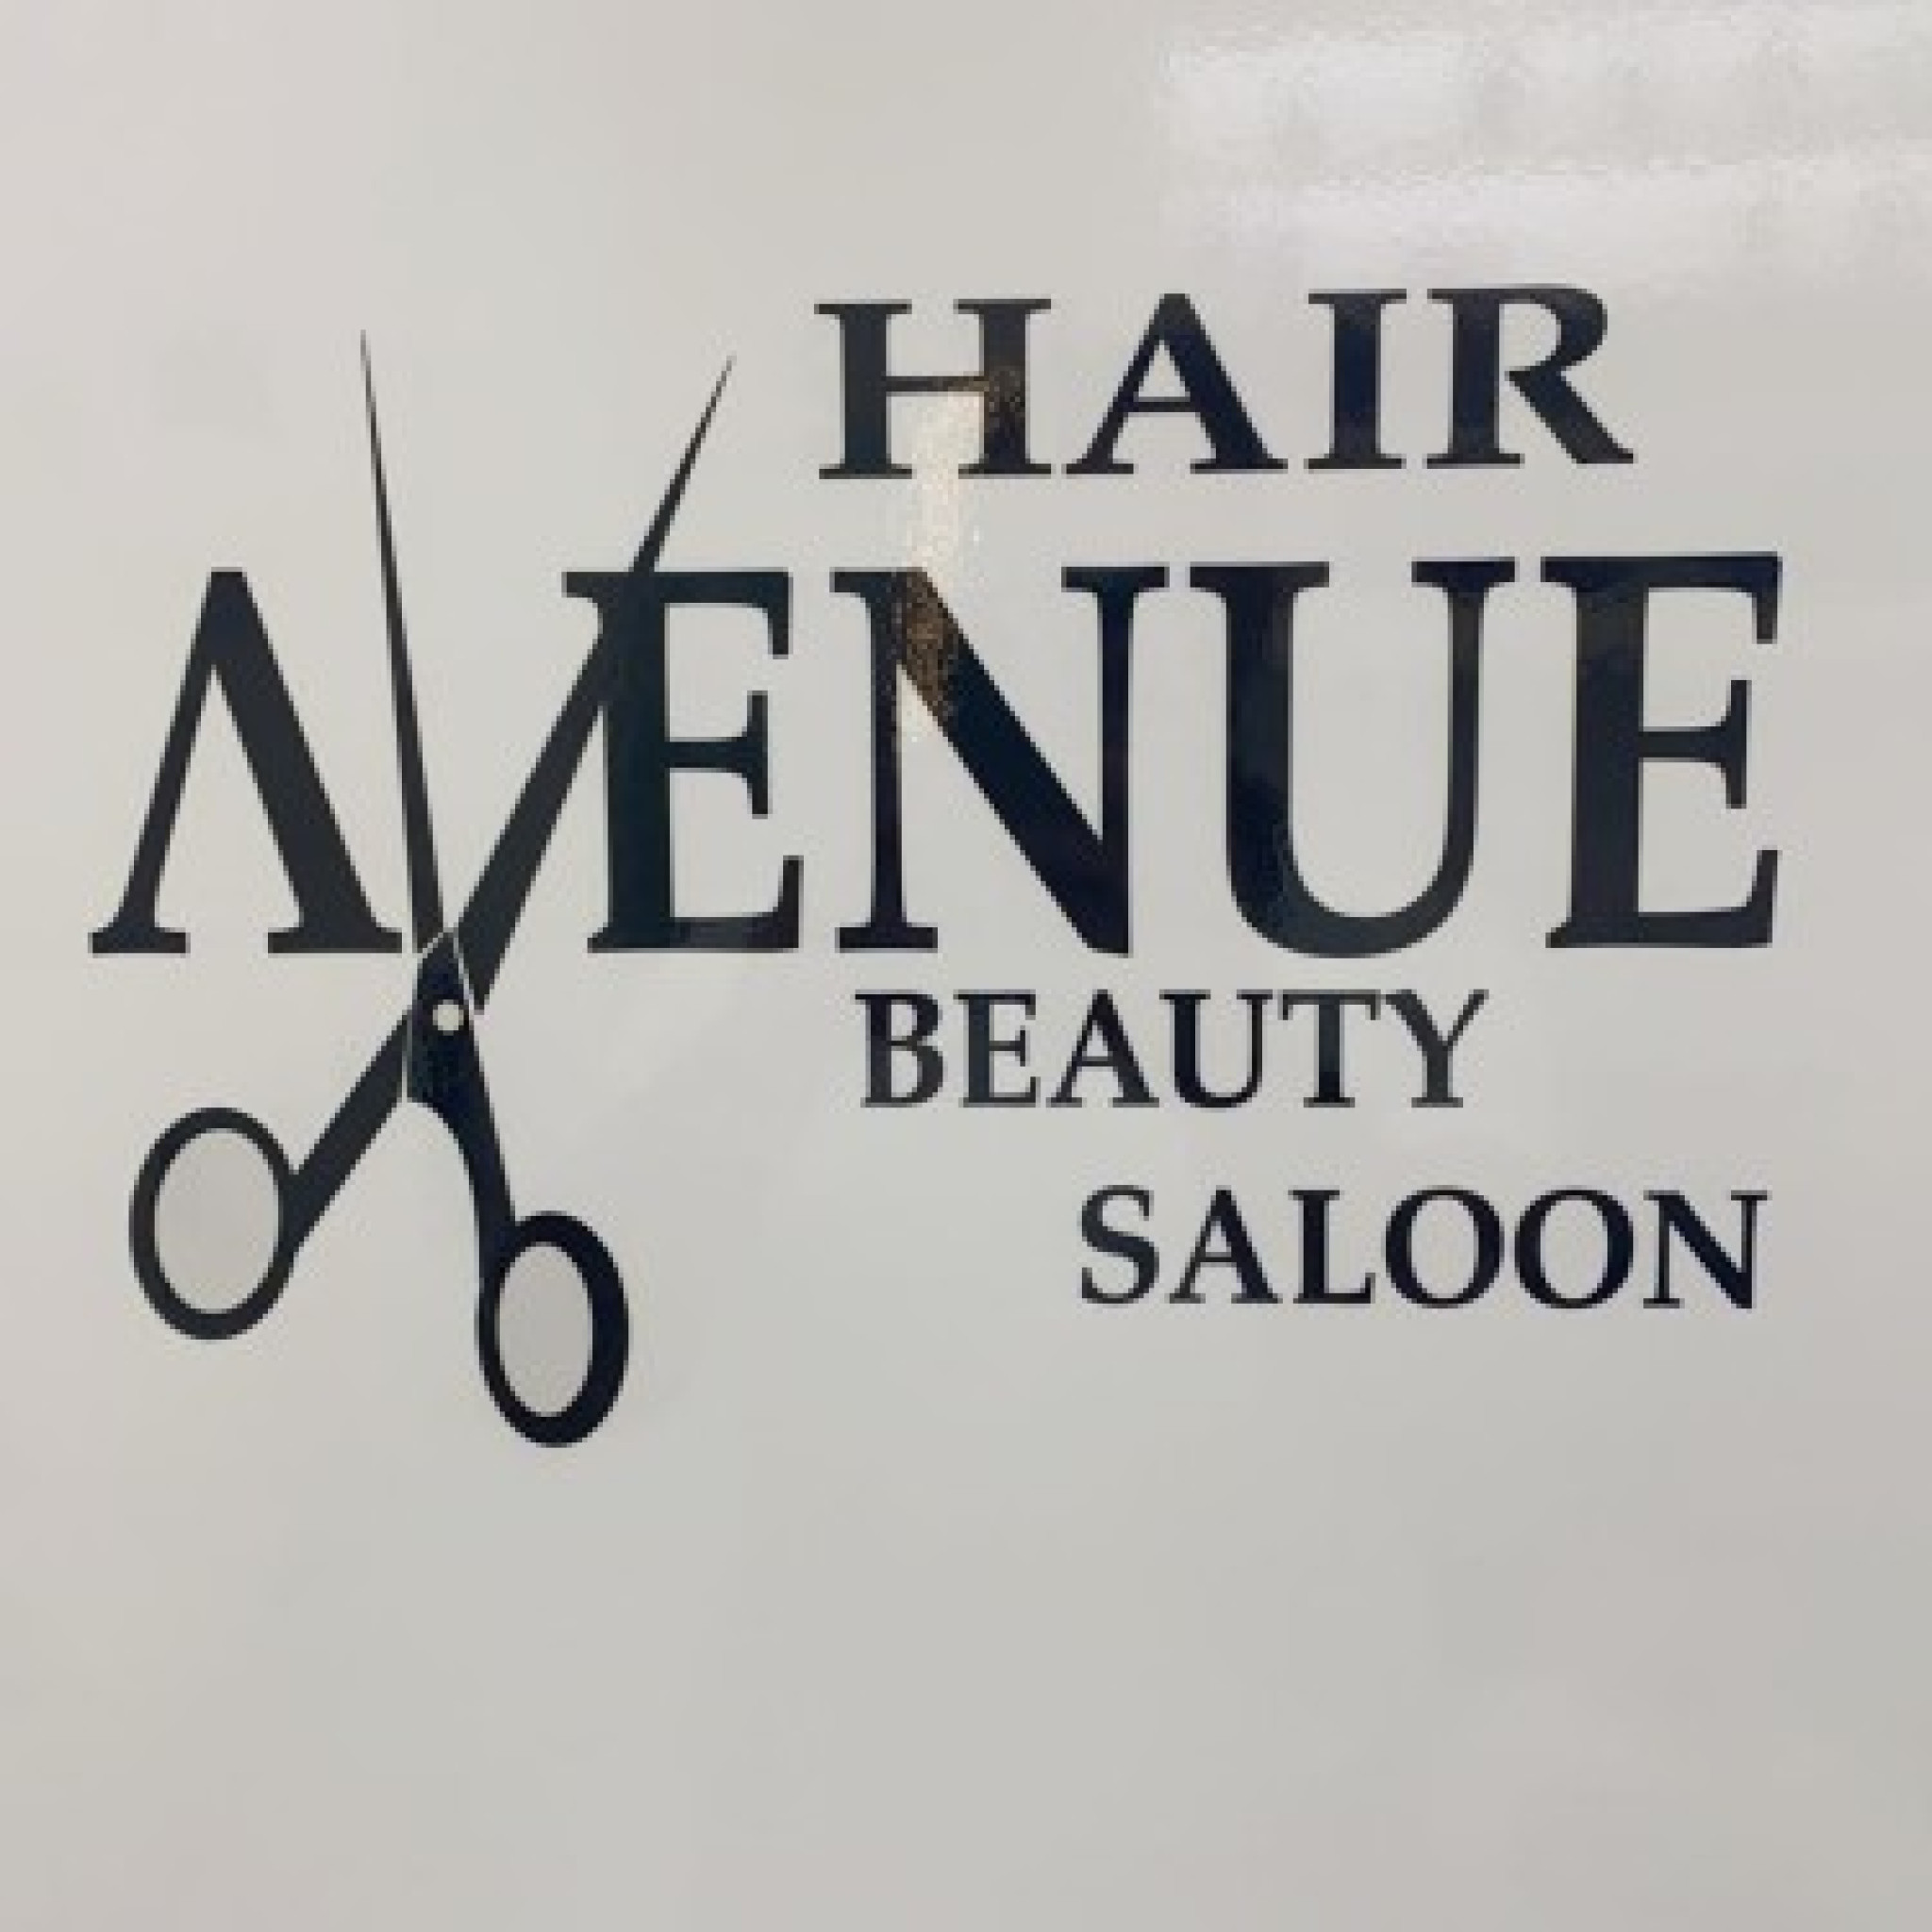 Hair Avenue Beauty Salon